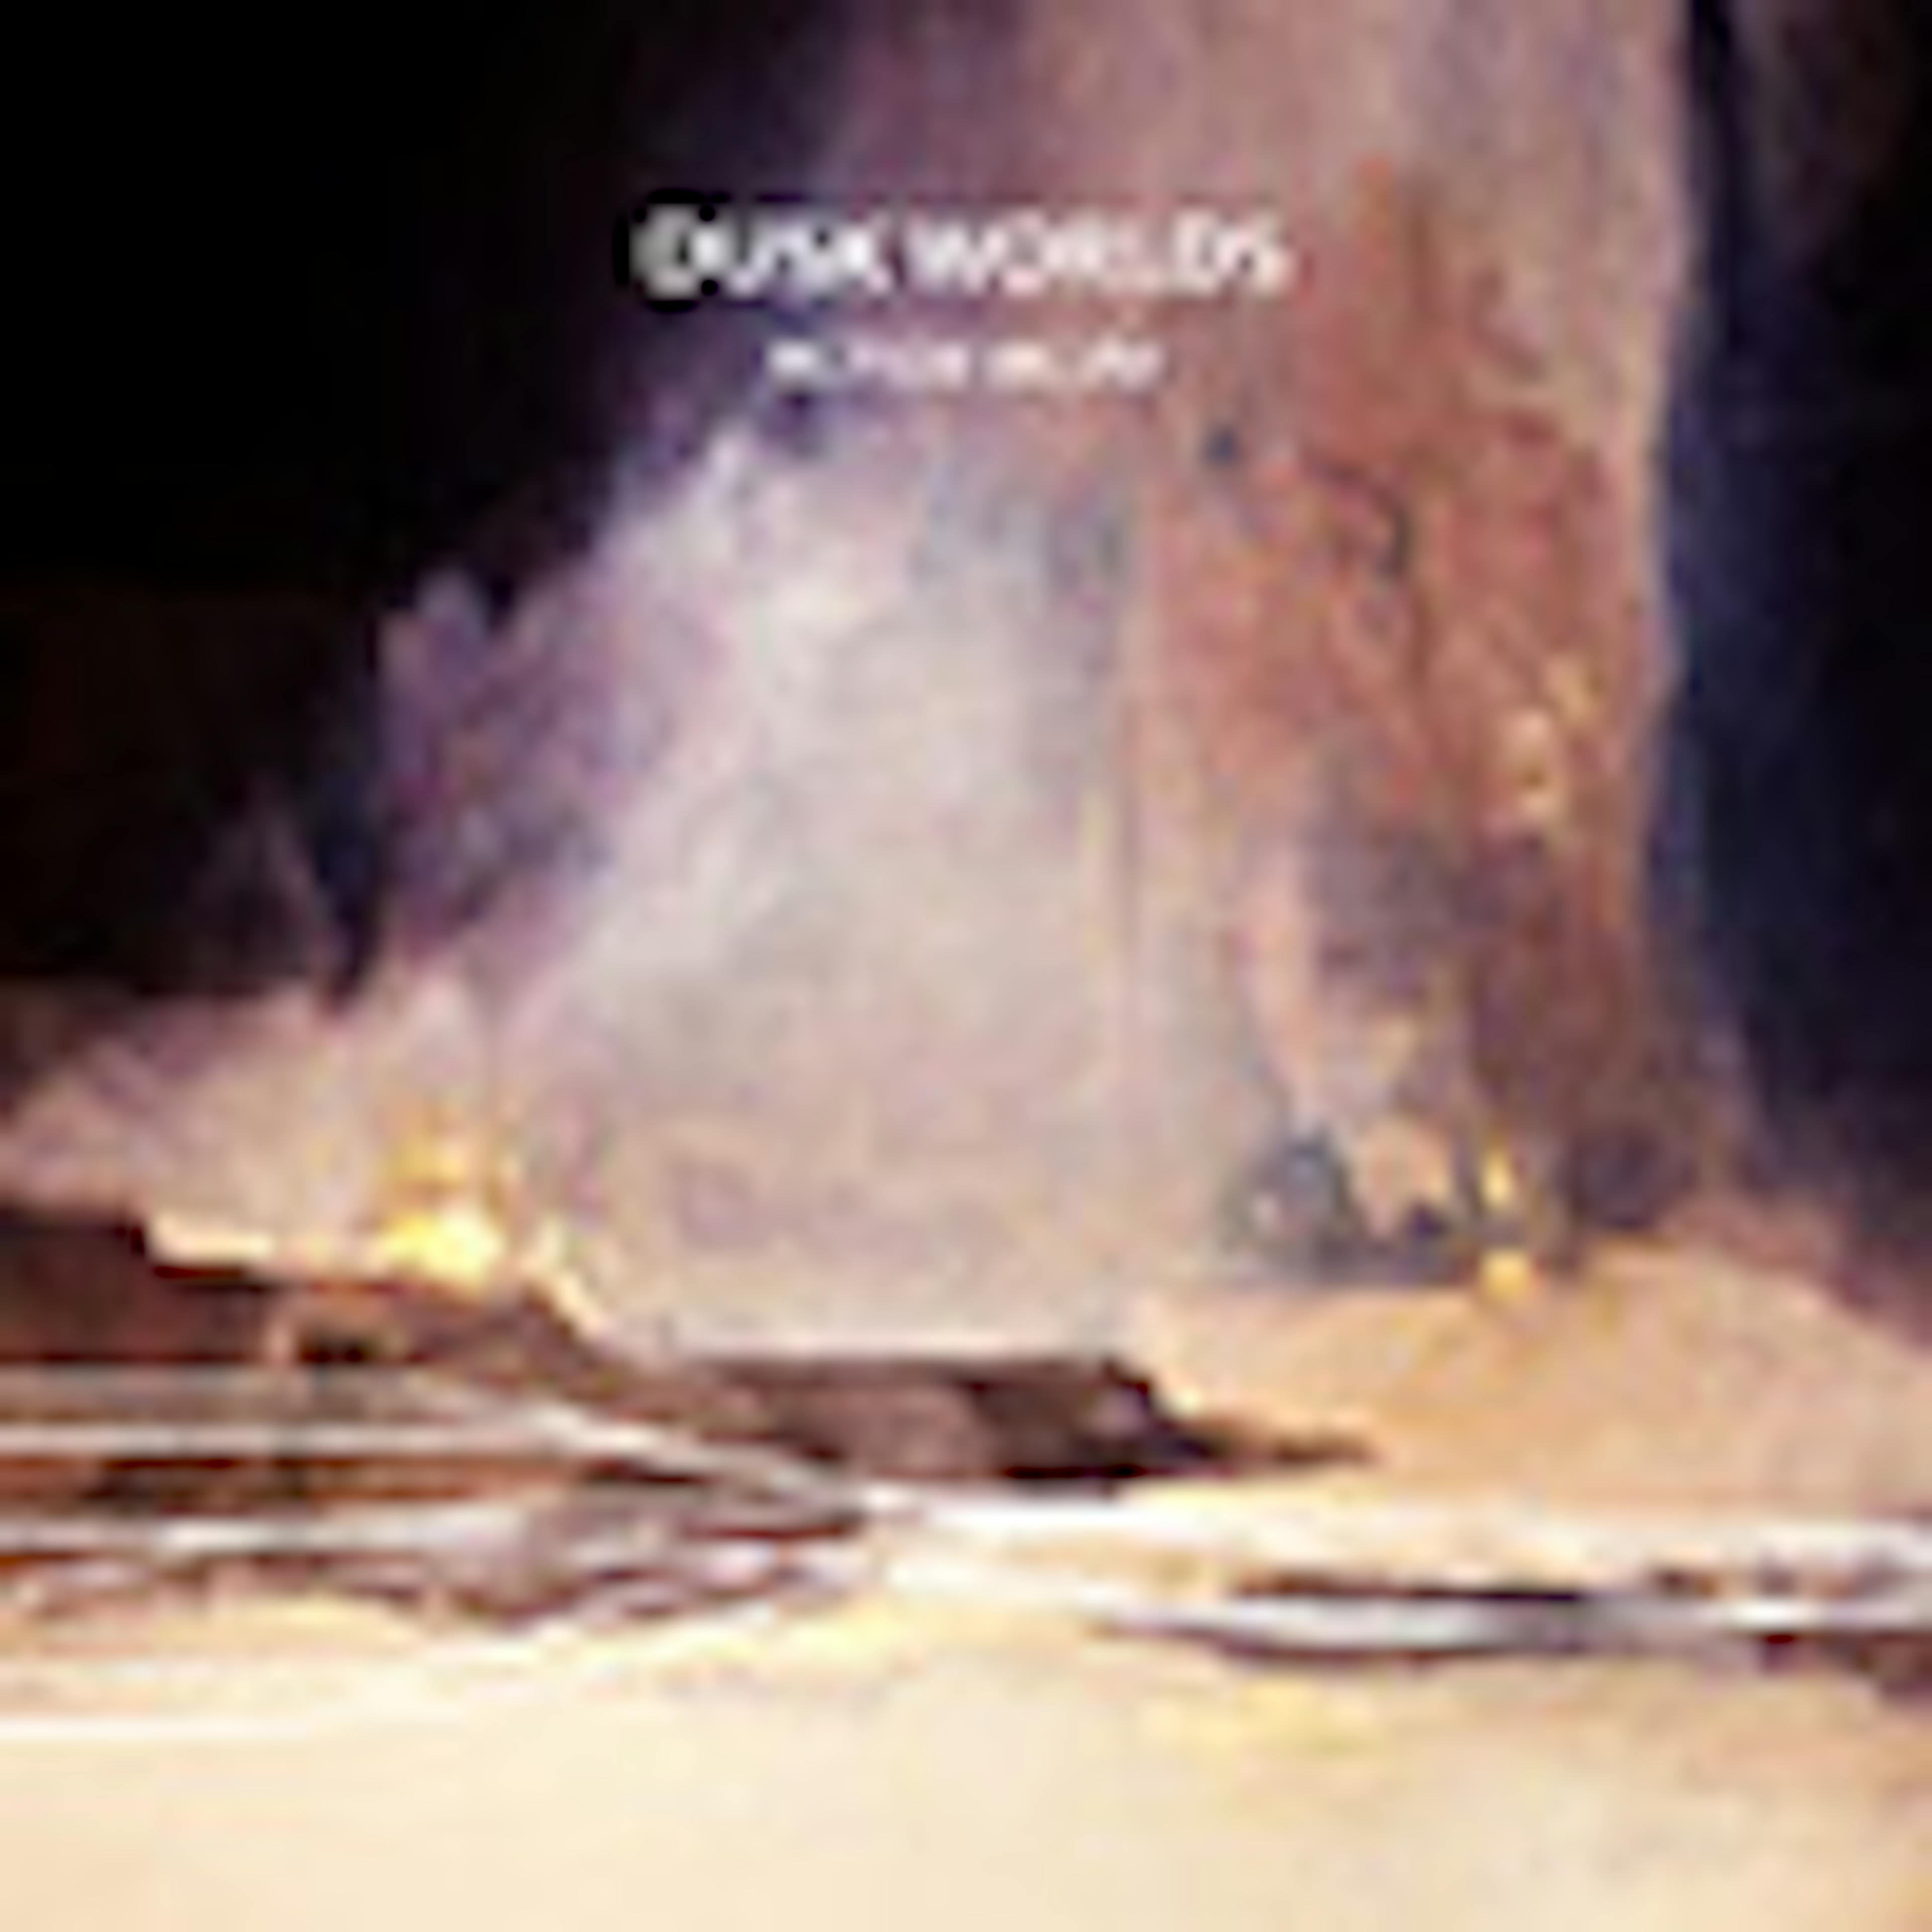 Dusk Worlds album cover